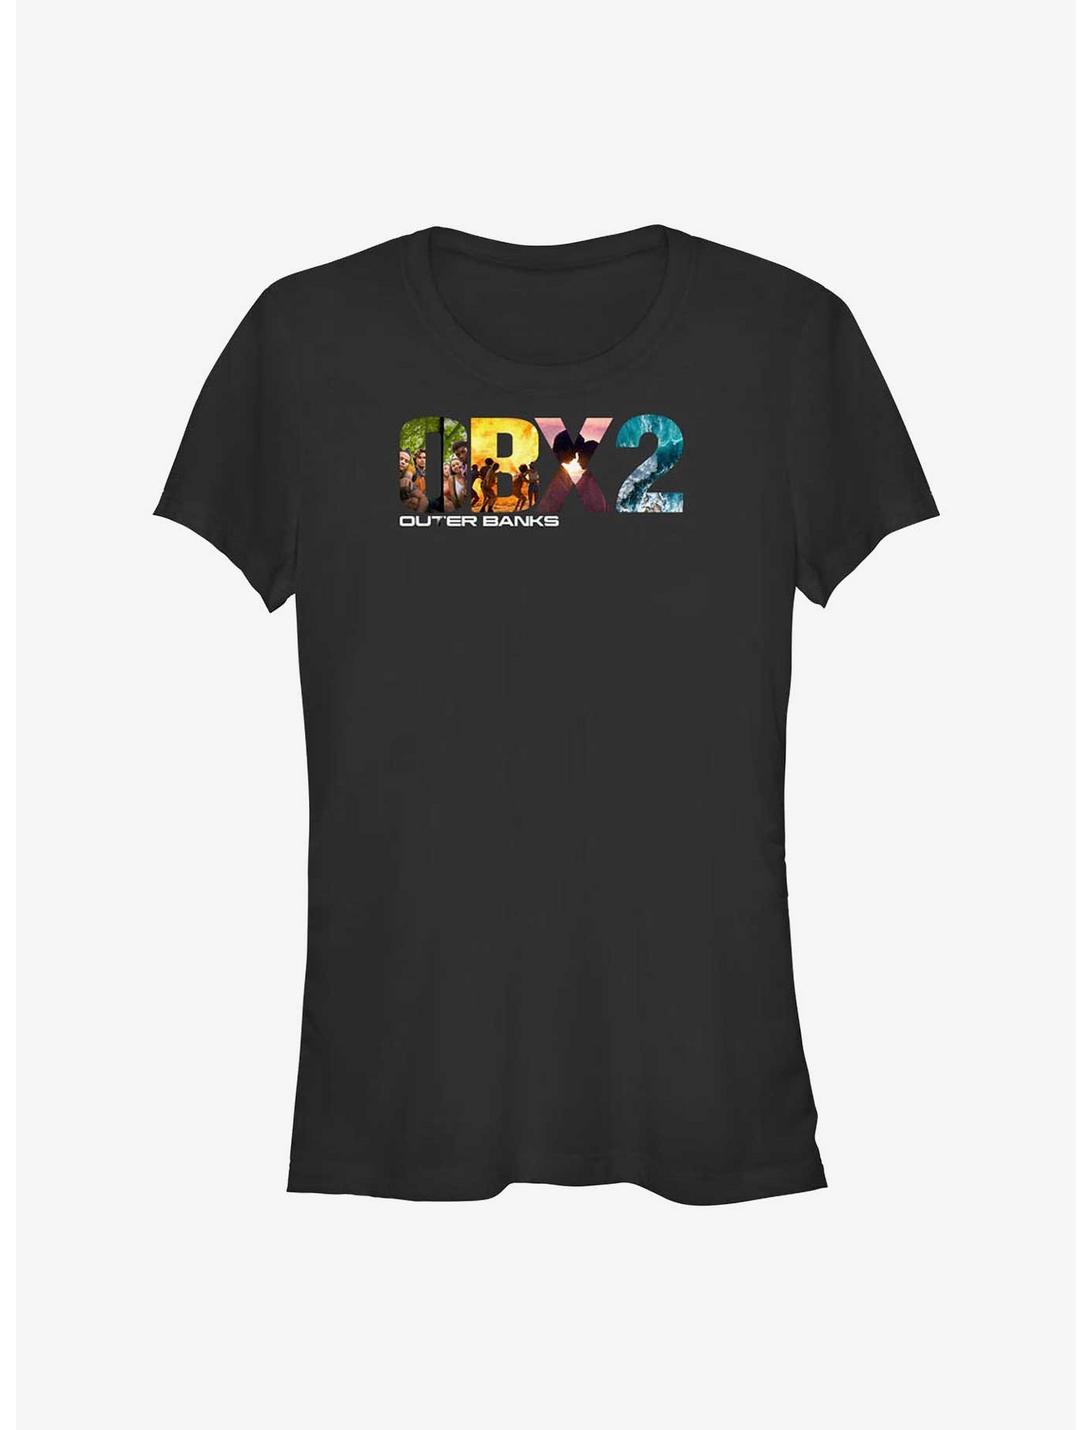 Outer Banks OBX2 Logo Girls T-Shirt, BLACK, hi-res